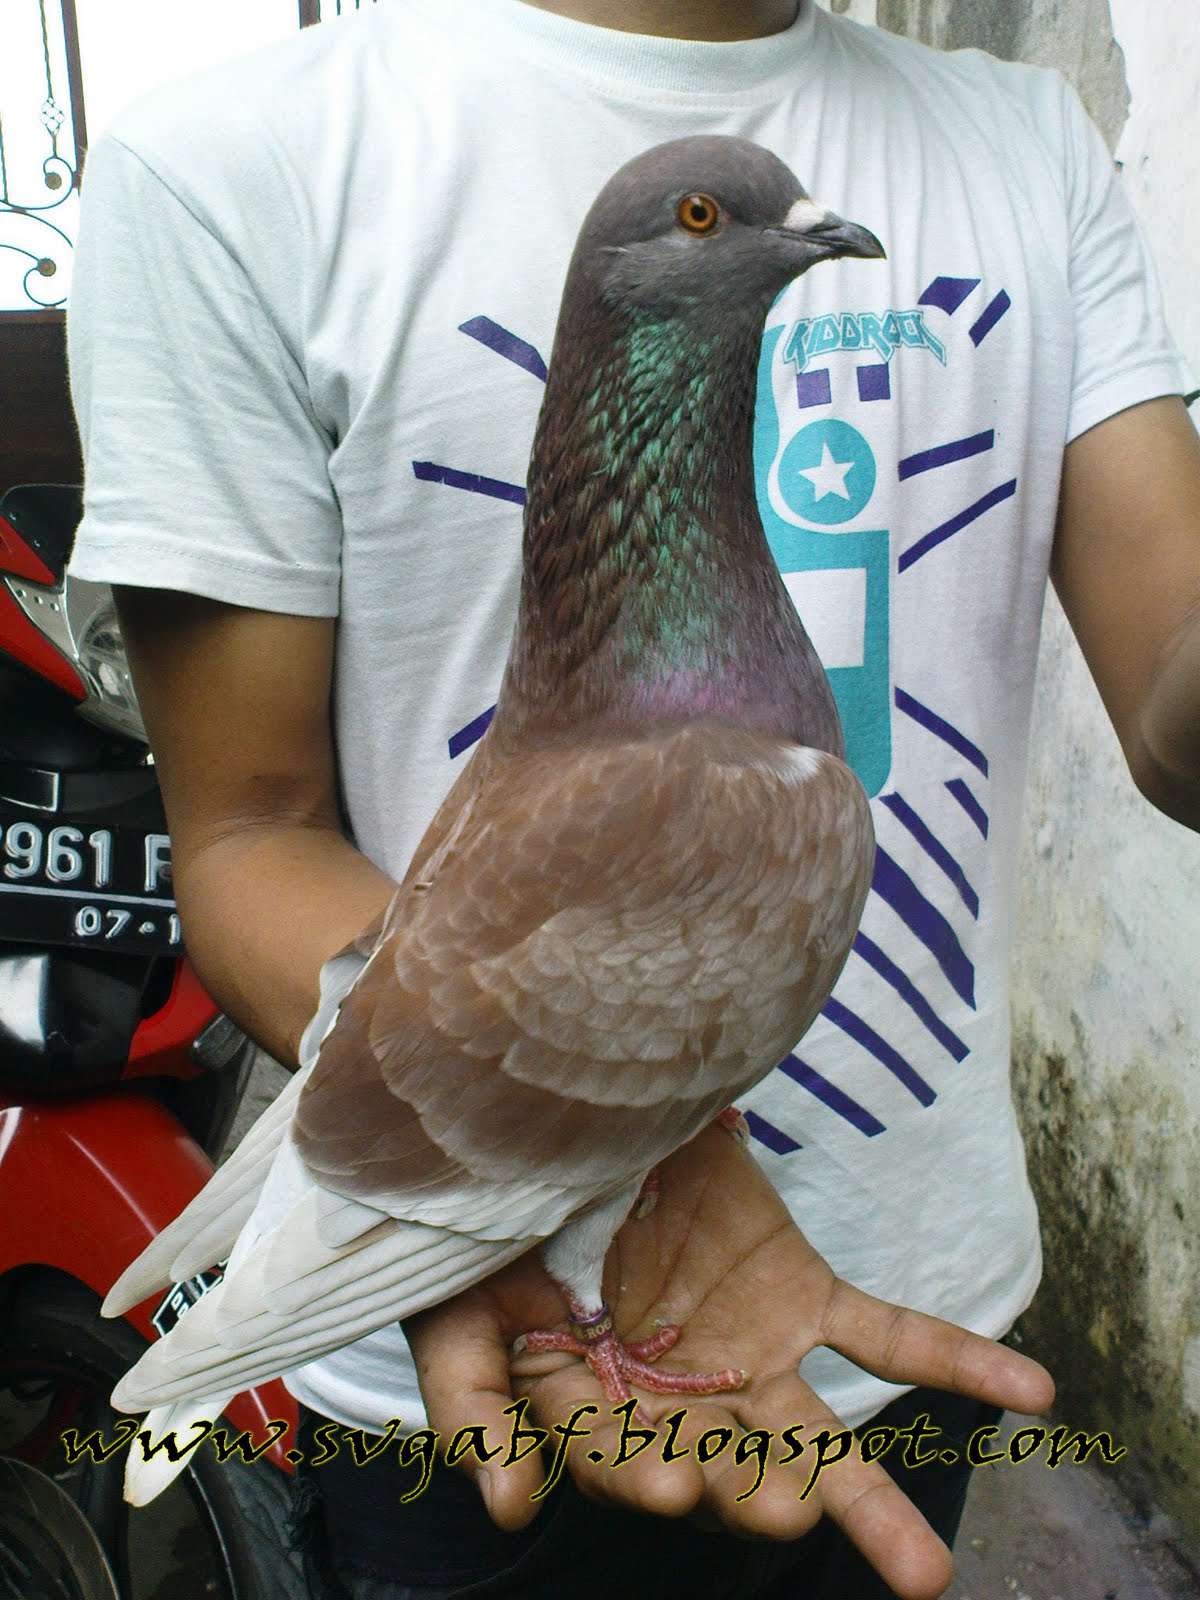 Merpati Balap SvGA Bird Farm: April 2011